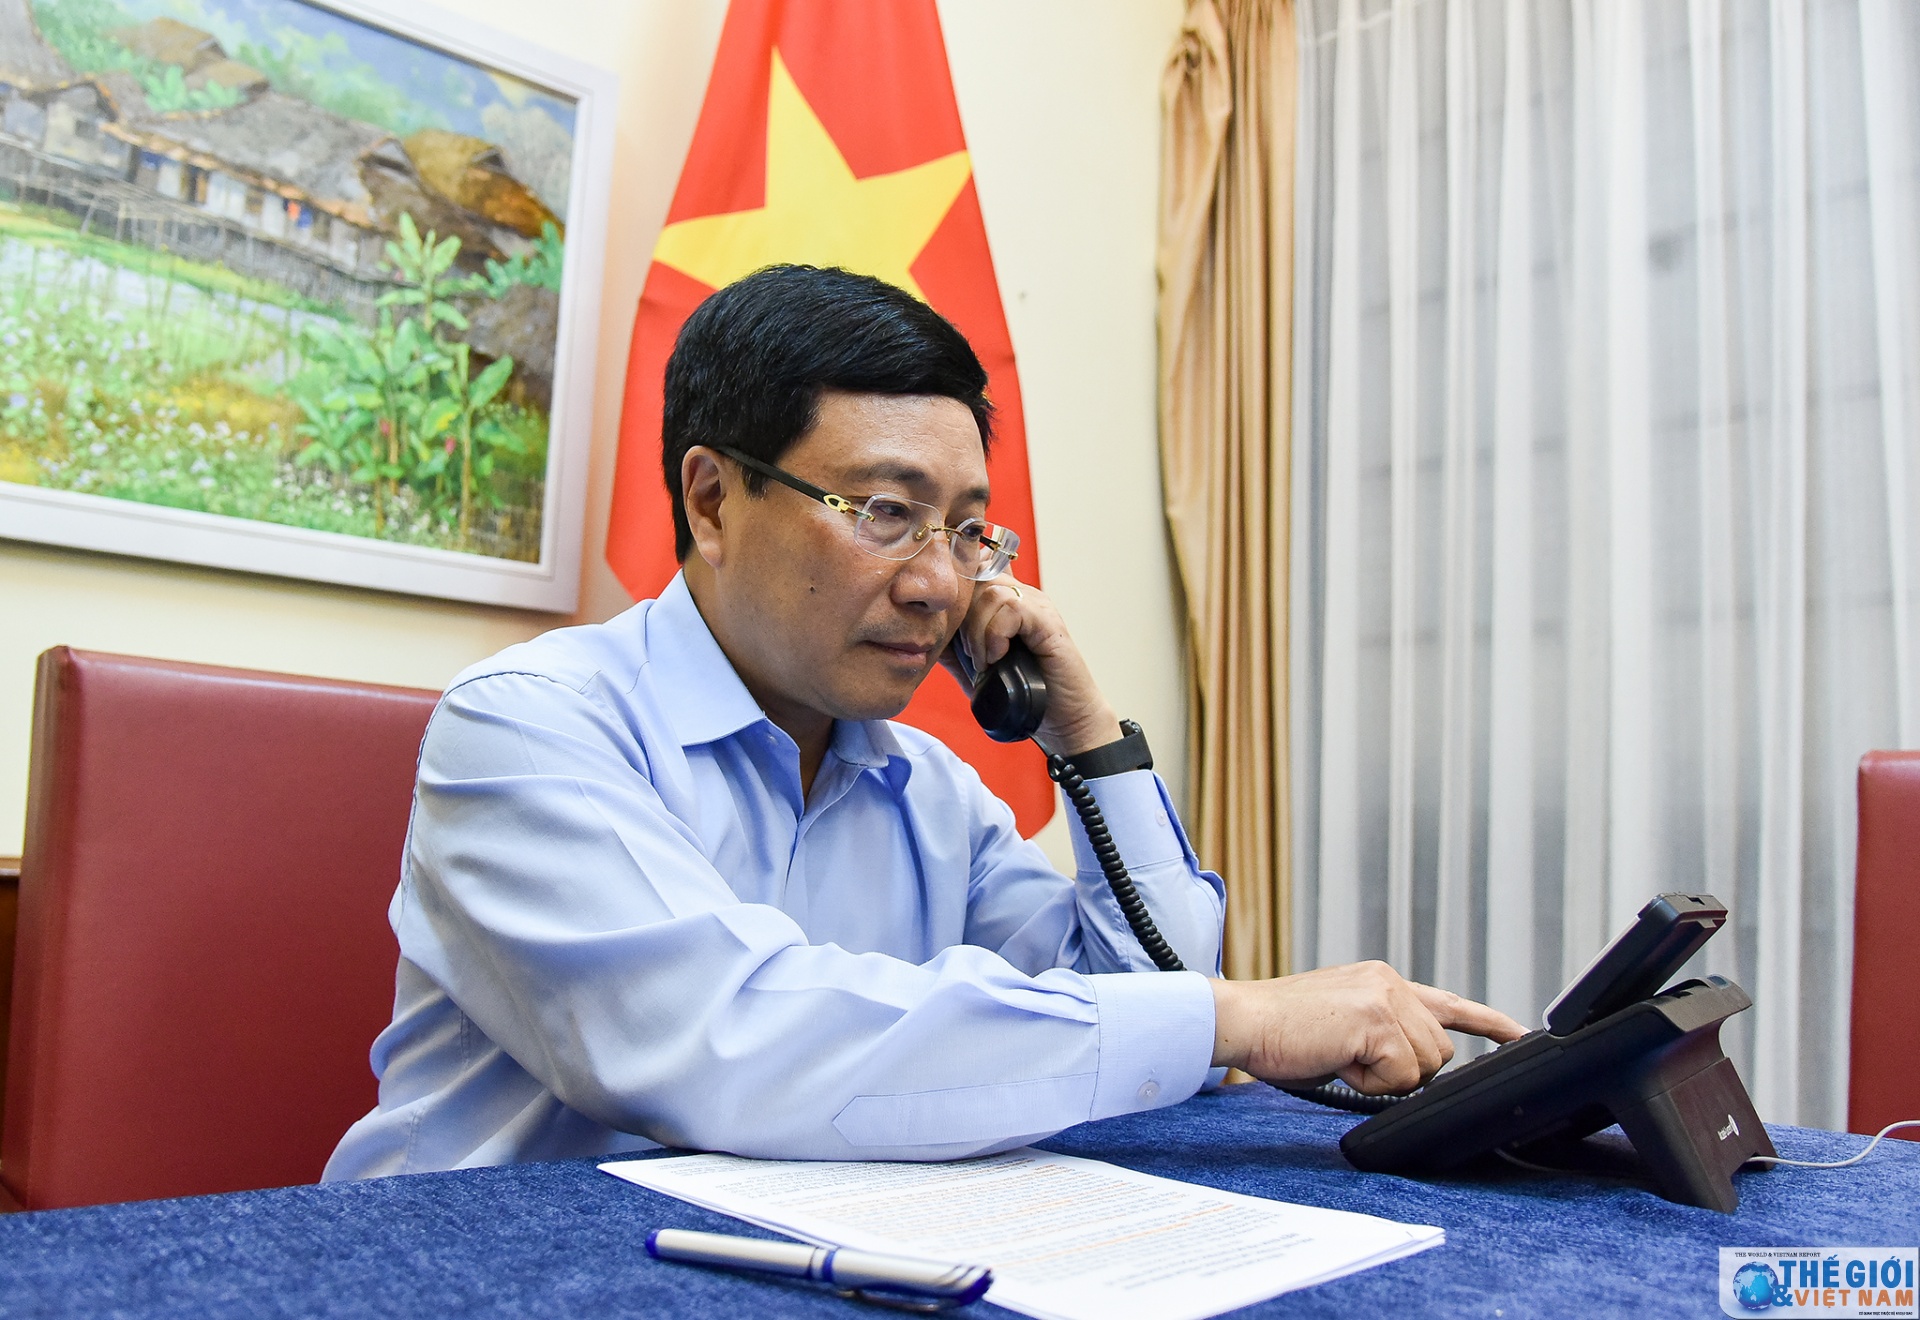 Phó Thủ tướng Phạm Bình Minh điện đàm với Bộ trưởng Ngoại giao Thụy Sỹ